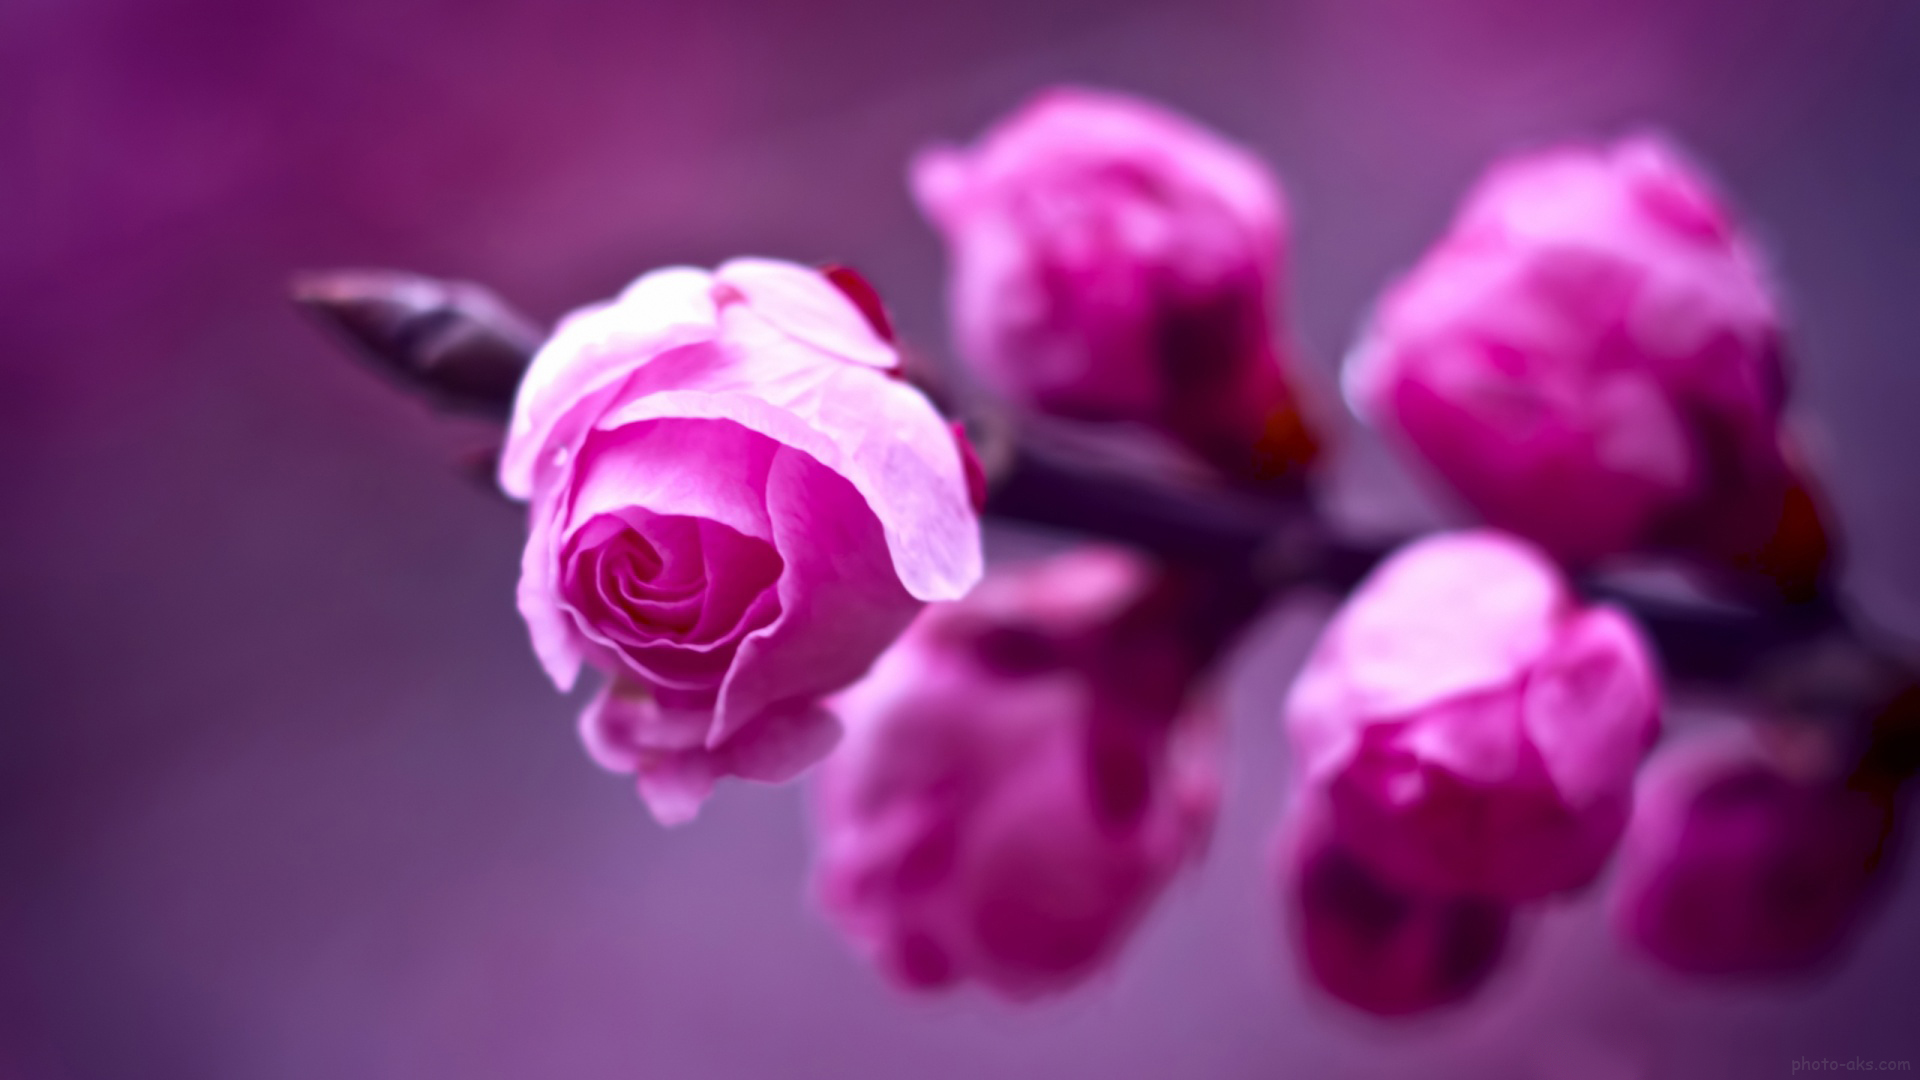 ,گل روز سرخ ، کل رز ، گلهای رز قشنگ و خوشگل ، بزرگترین سایت گل رز قرمز ، gole roz ziba germez ،  goleh roz sorkh،  rose flower wallpaperفتوعکس | photo-aks,[categoriy]